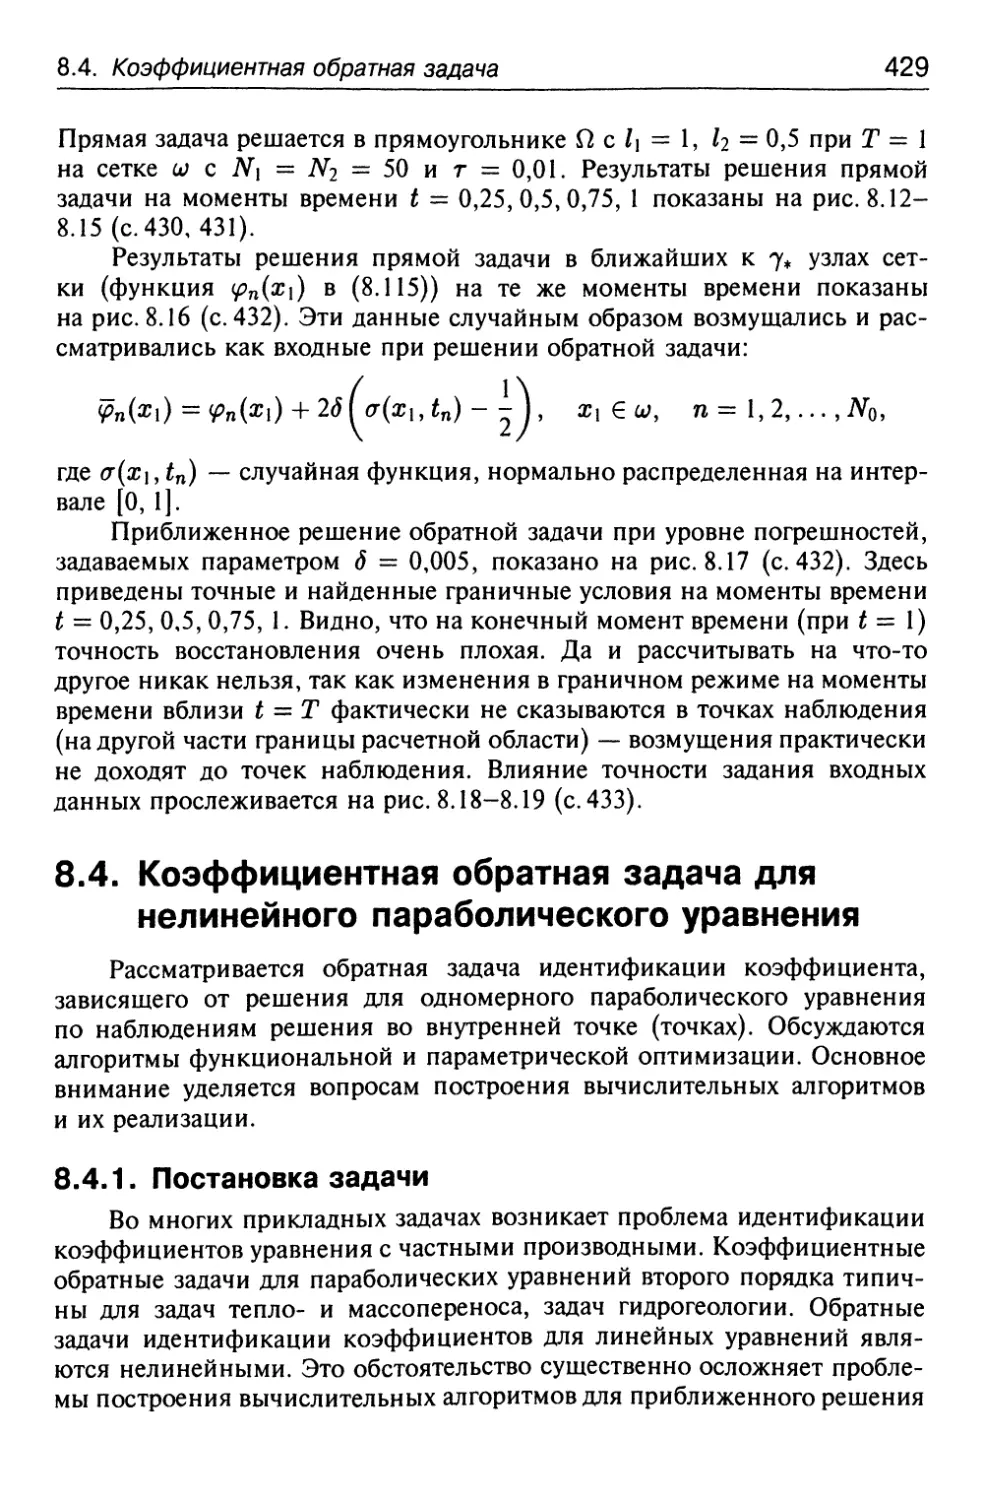 8.4. Коэффициентная обратная задача для нелинейного параболического уравнения